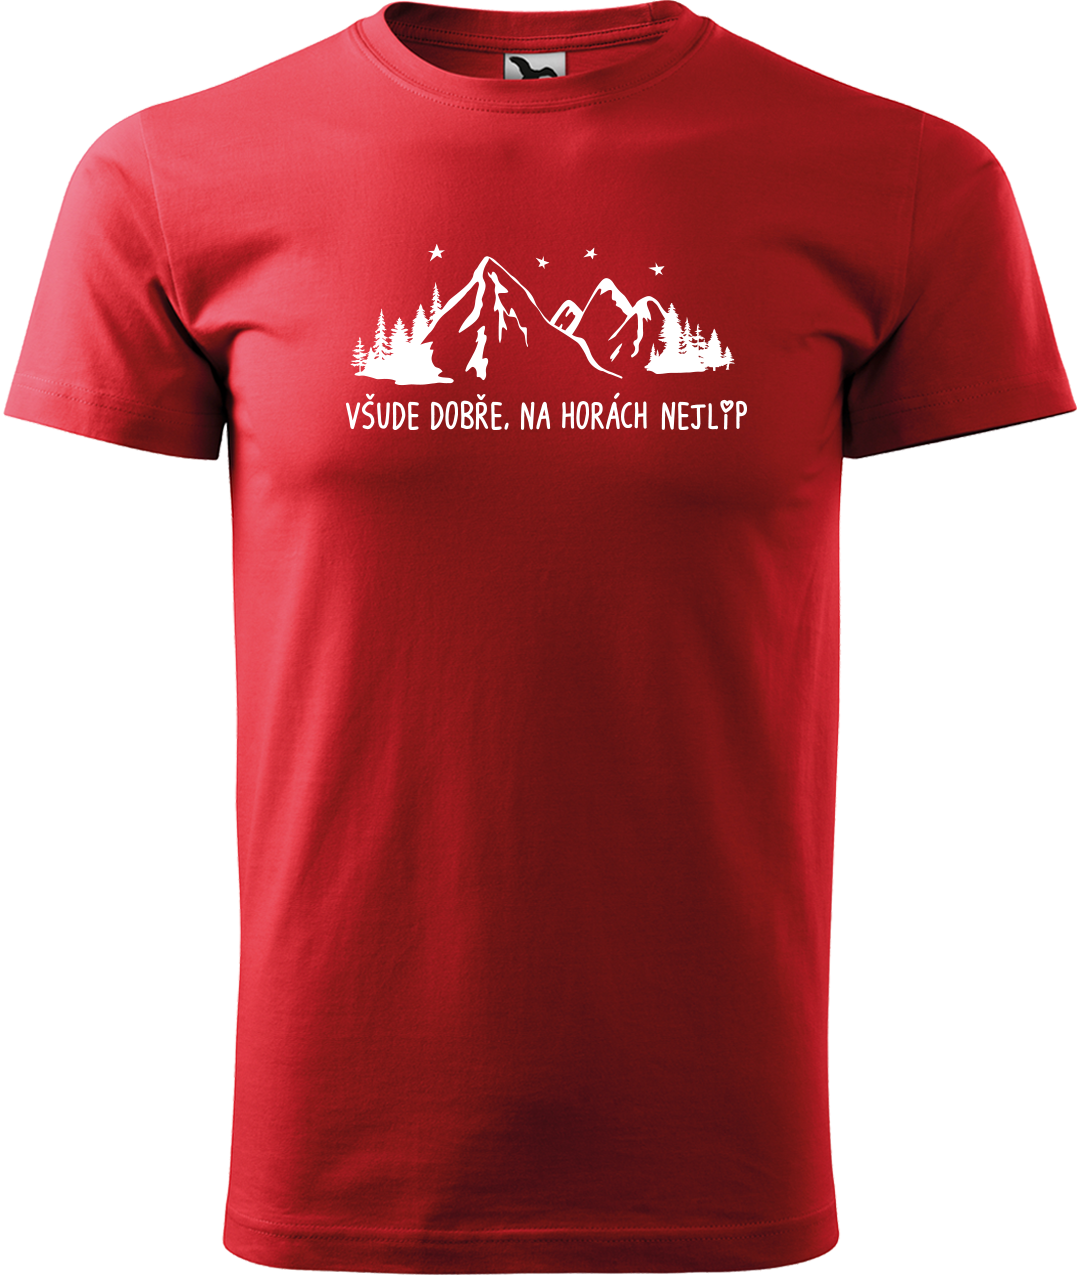 Pánské tričko na hory - Všude dobře, na horách nejlíp Velikost: XL, Barva: Červená (07)